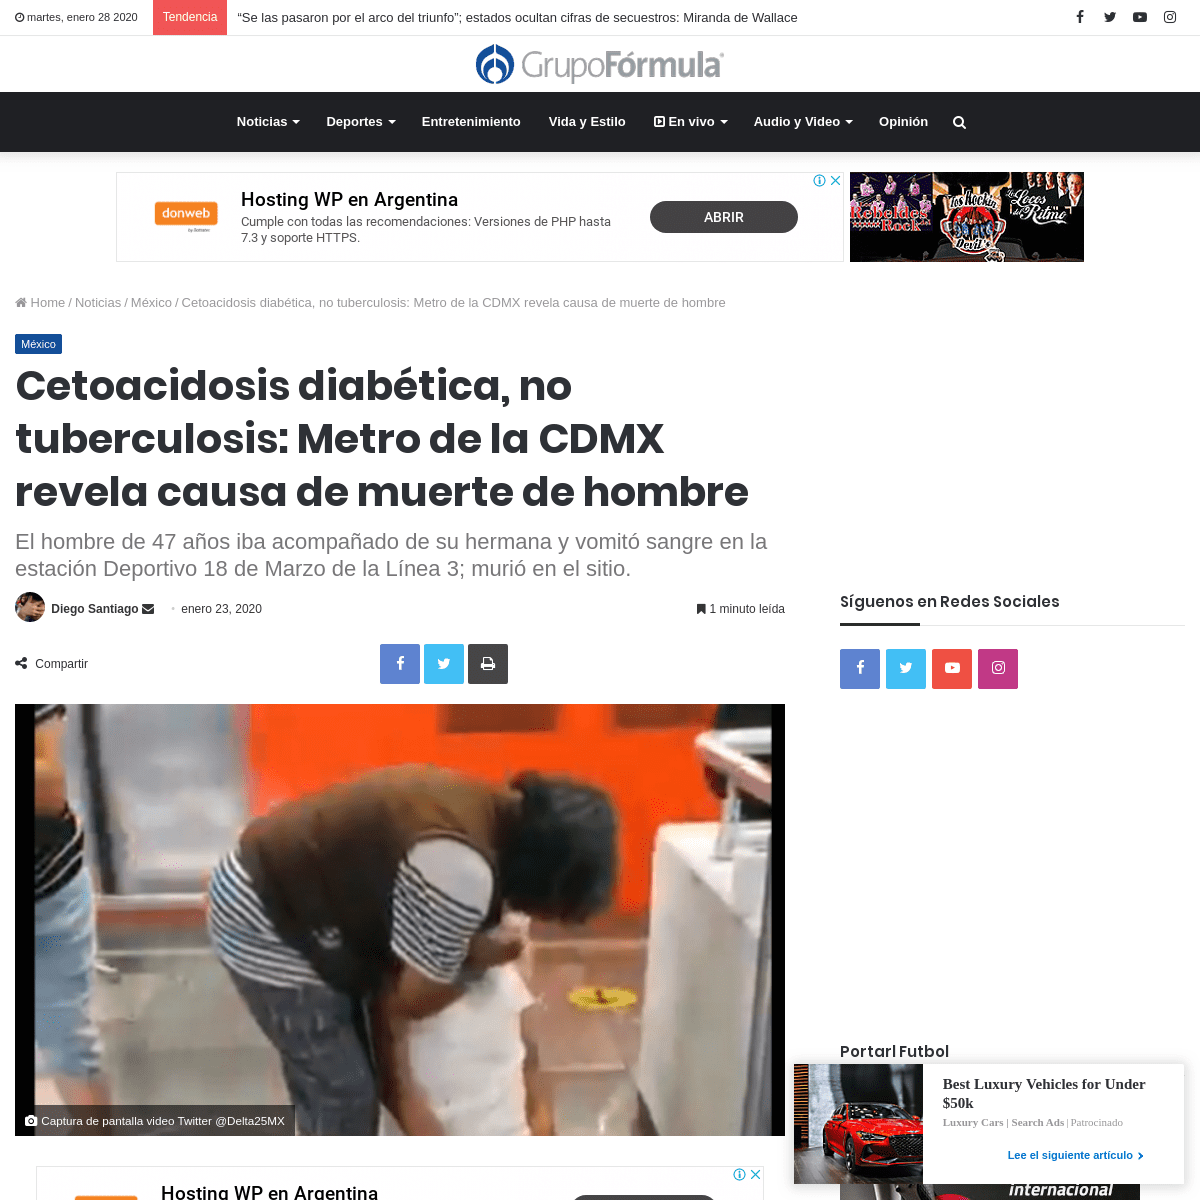 A complete backup of www.radioformula.com.mx/noticias/mexico/20200123/hombre-con-tuberculosis-muere-en-el-metro-cdmx-video-depor